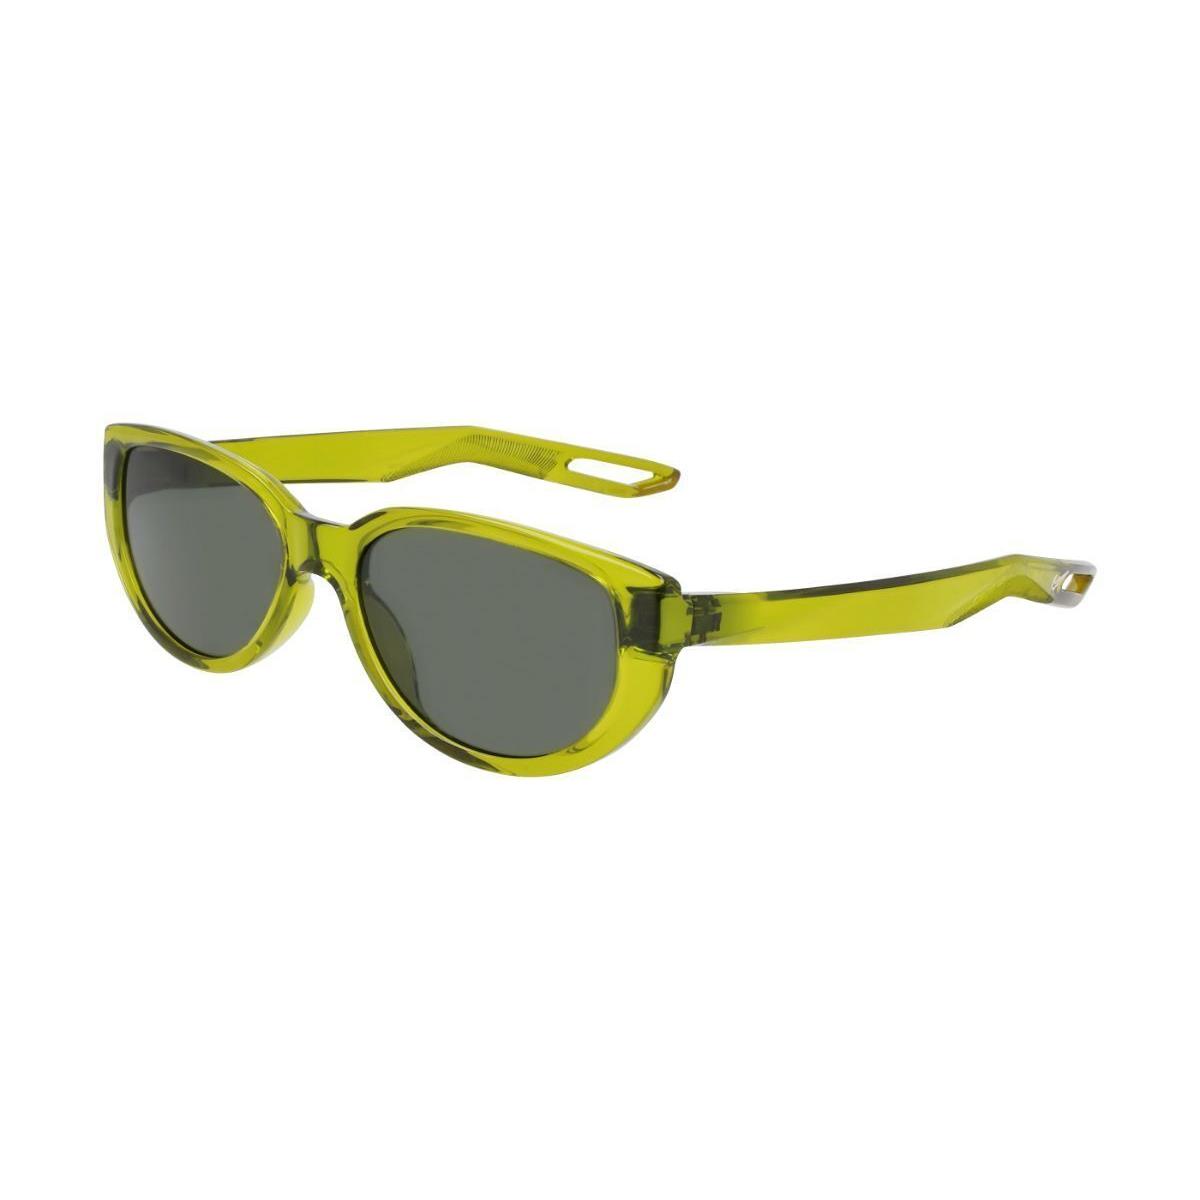 Nike NV07 FN0303 390 Womens Sunglasses Green Size 55